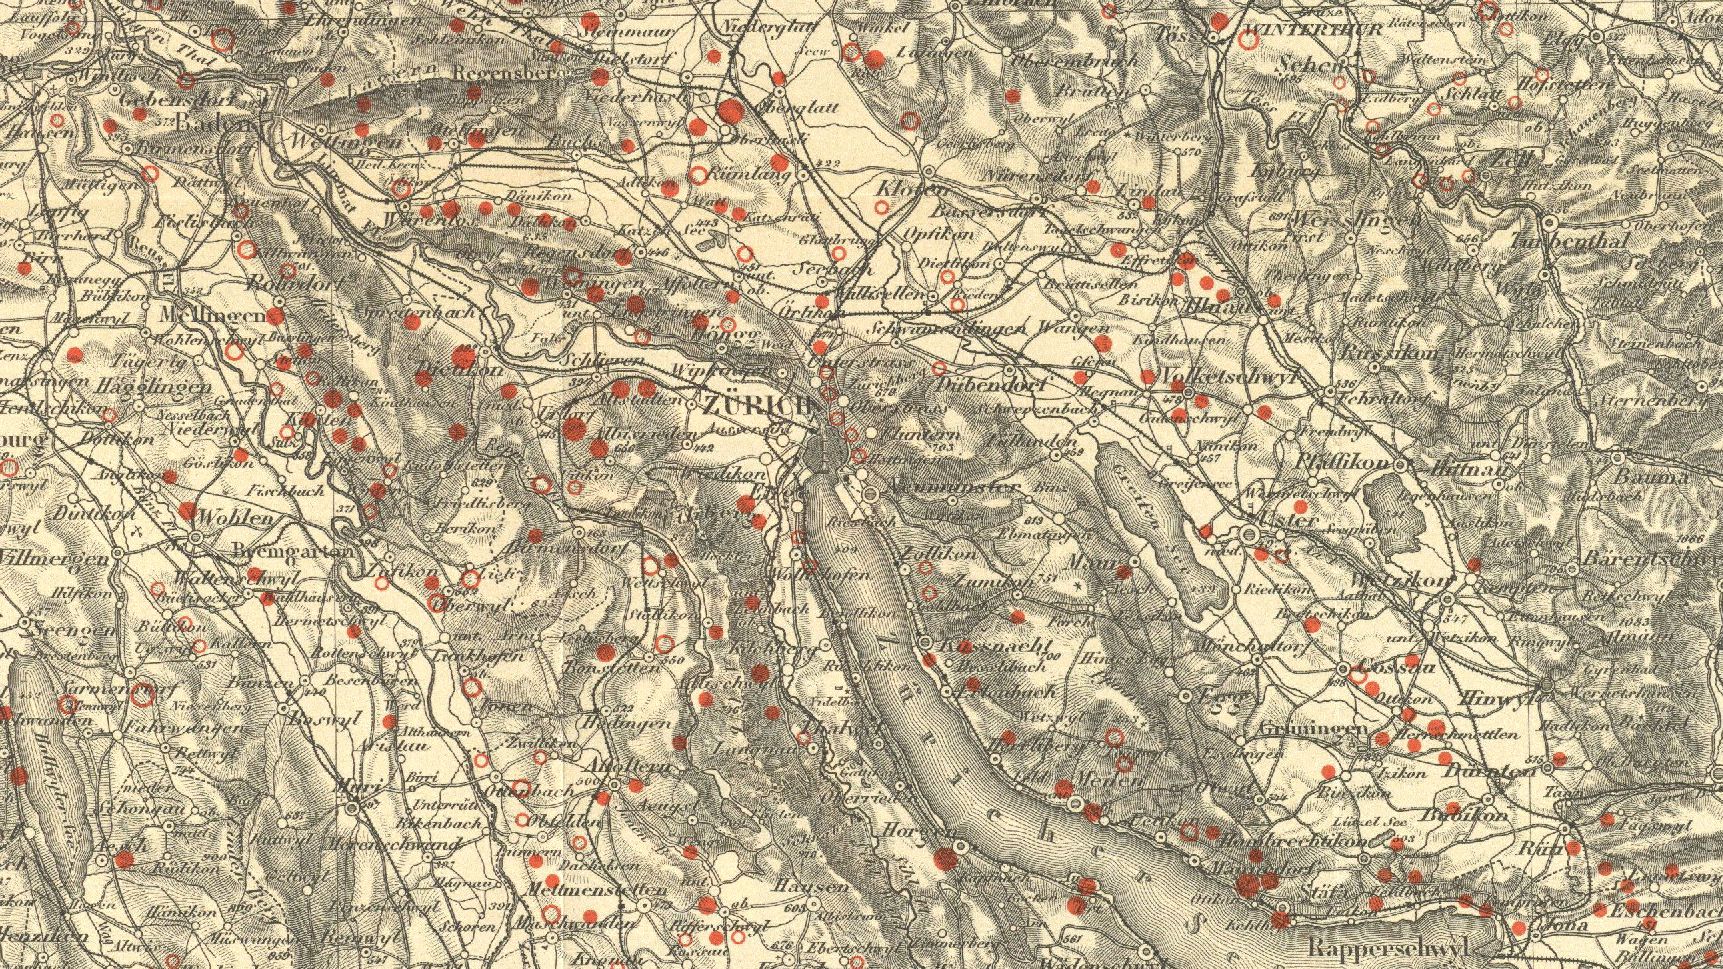 Ausschnittt aus der Karte der Veränderungen in der Verbreitung des Reblandes der Nordostschweiz